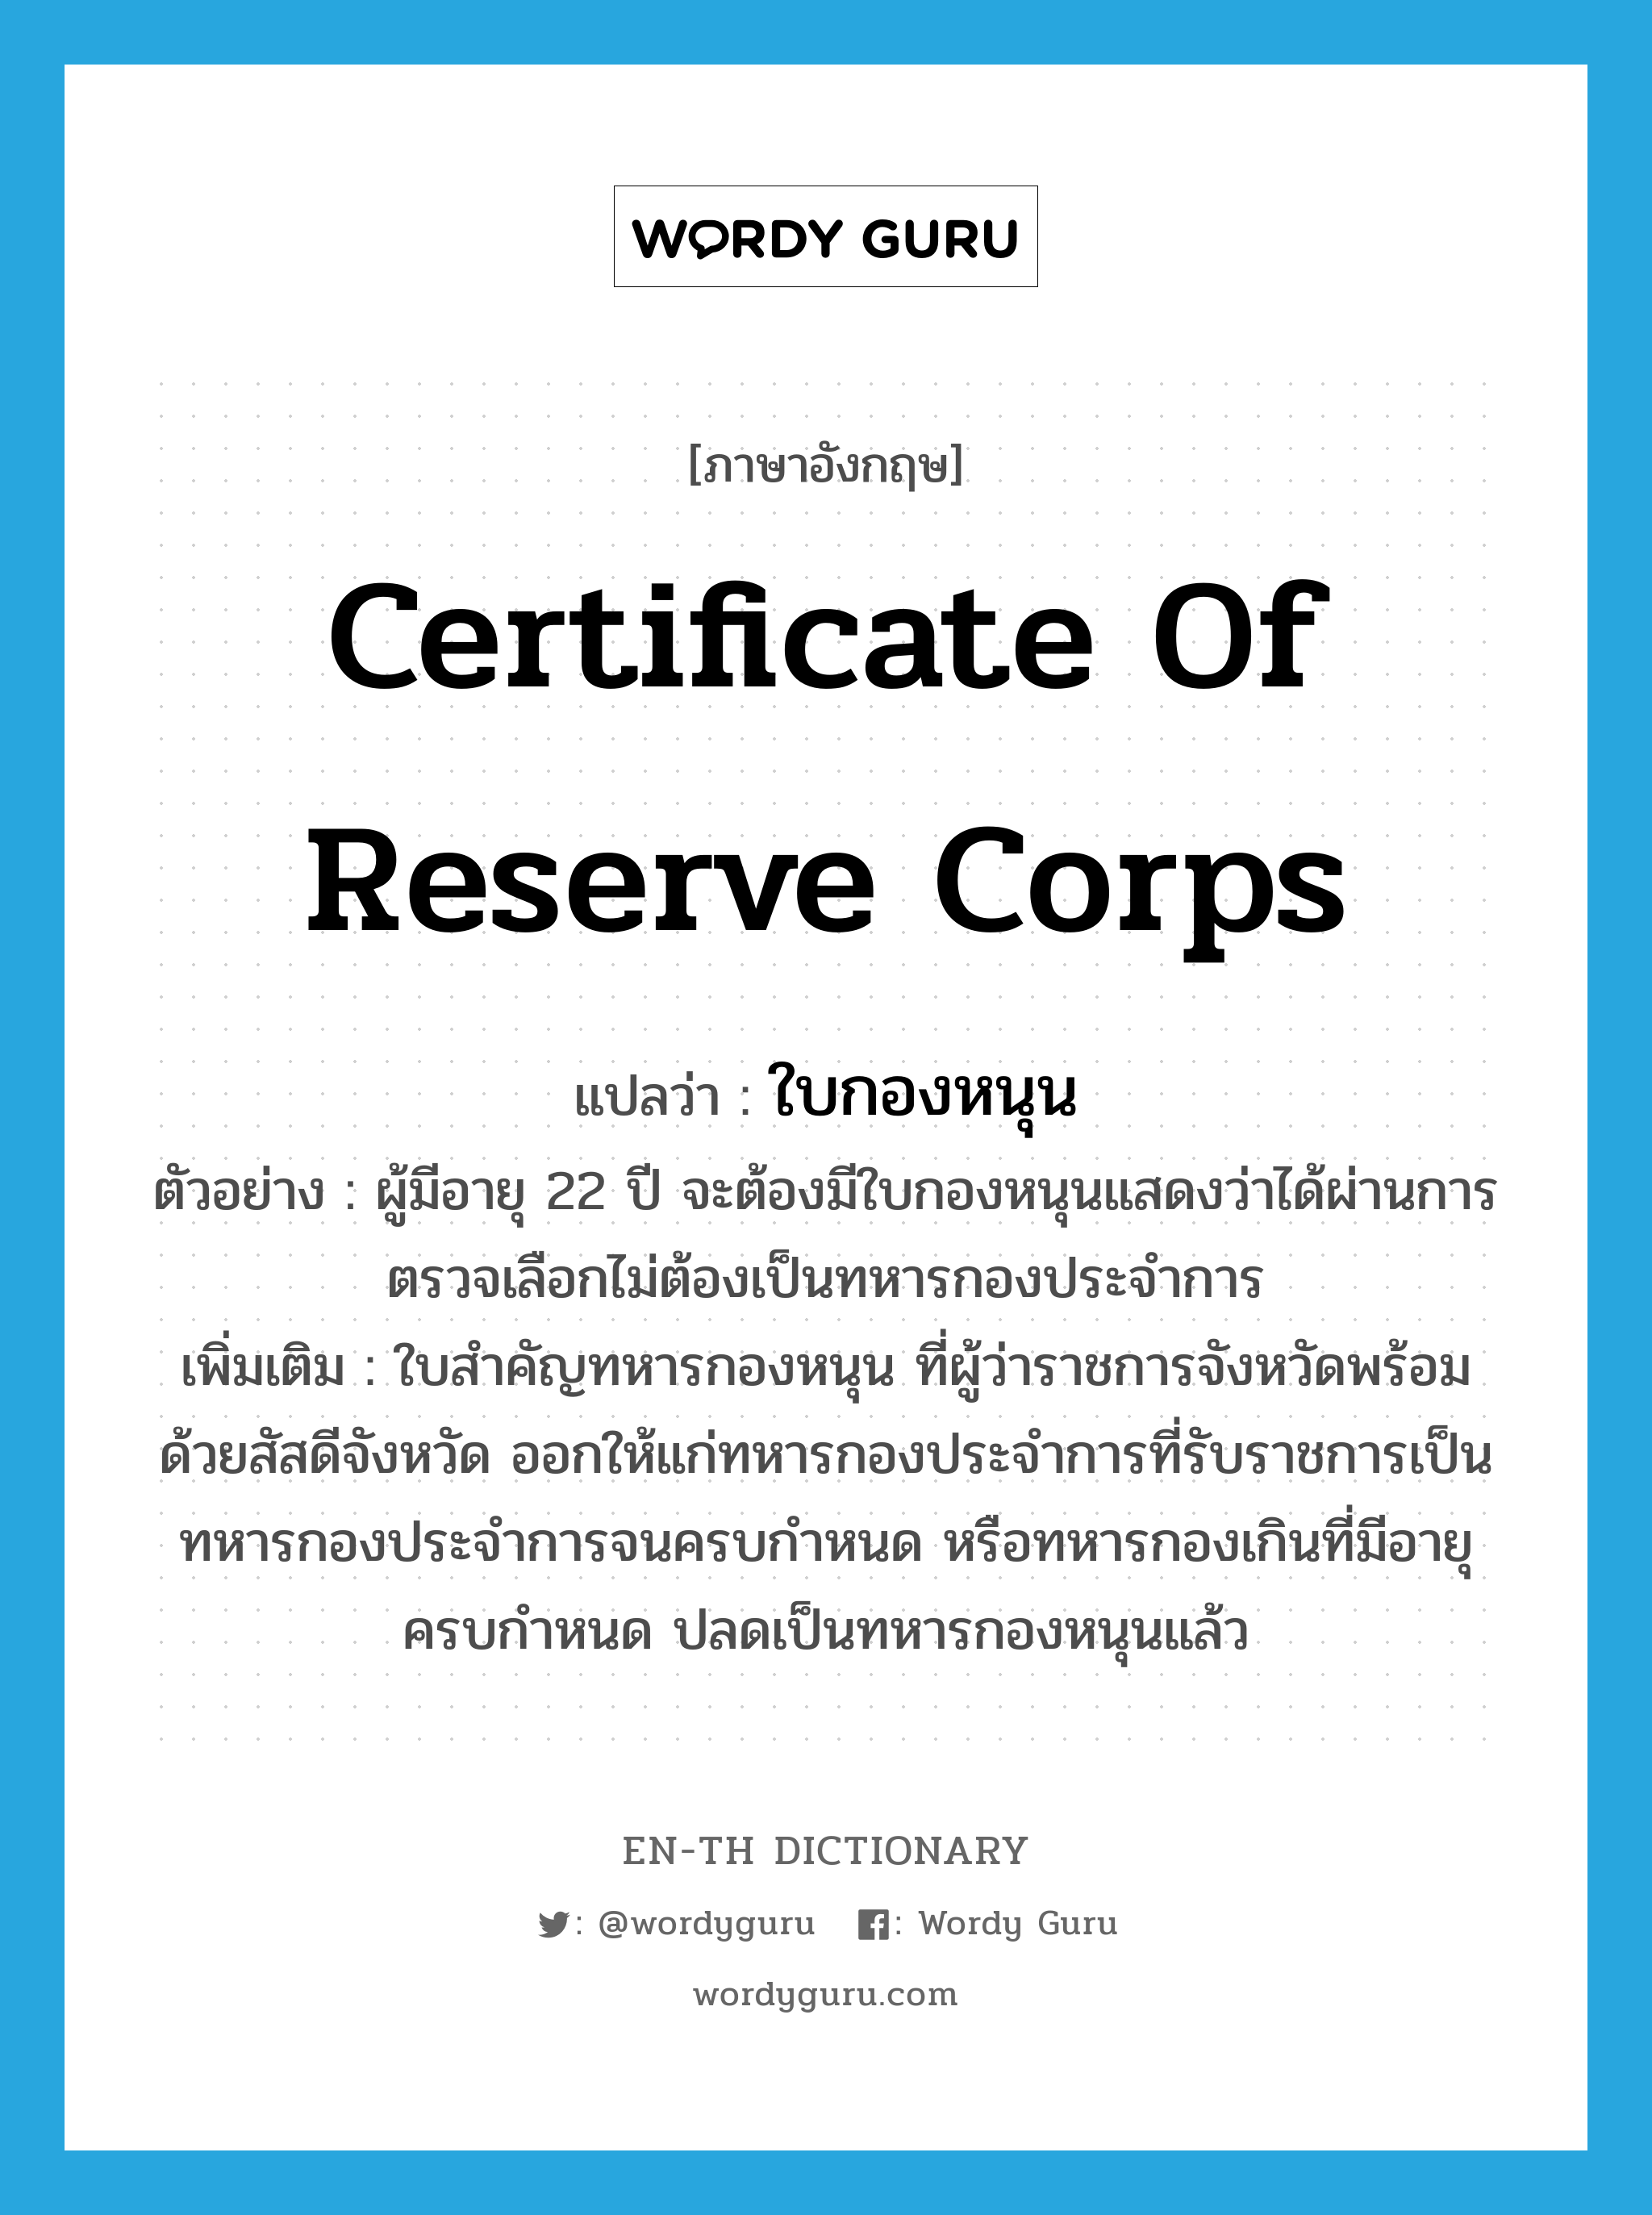 certificate of reserve corps แปลว่า?, คำศัพท์ภาษาอังกฤษ certificate of reserve corps แปลว่า ใบกองหนุน ประเภท N ตัวอย่าง ผู้มีอายุ 22 ปี จะต้องมีใบกองหนุนแสดงว่าได้ผ่านการตรวจเลือกไม่ต้องเป็นทหารกองประจำการ เพิ่มเติม ใบสำคัญทหารกองหนุน ที่ผู้ว่าราชการจังหวัดพร้อมด้วยสัสดีจังหวัด ออกให้แก่ทหารกองประจำการที่รับราชการเป็นทหารกองประจำการจนครบกำหนด หรือทหารกองเกินที่มีอายุครบกำหนด ปลดเป็นทหารกองหนุนแล้ว หมวด N